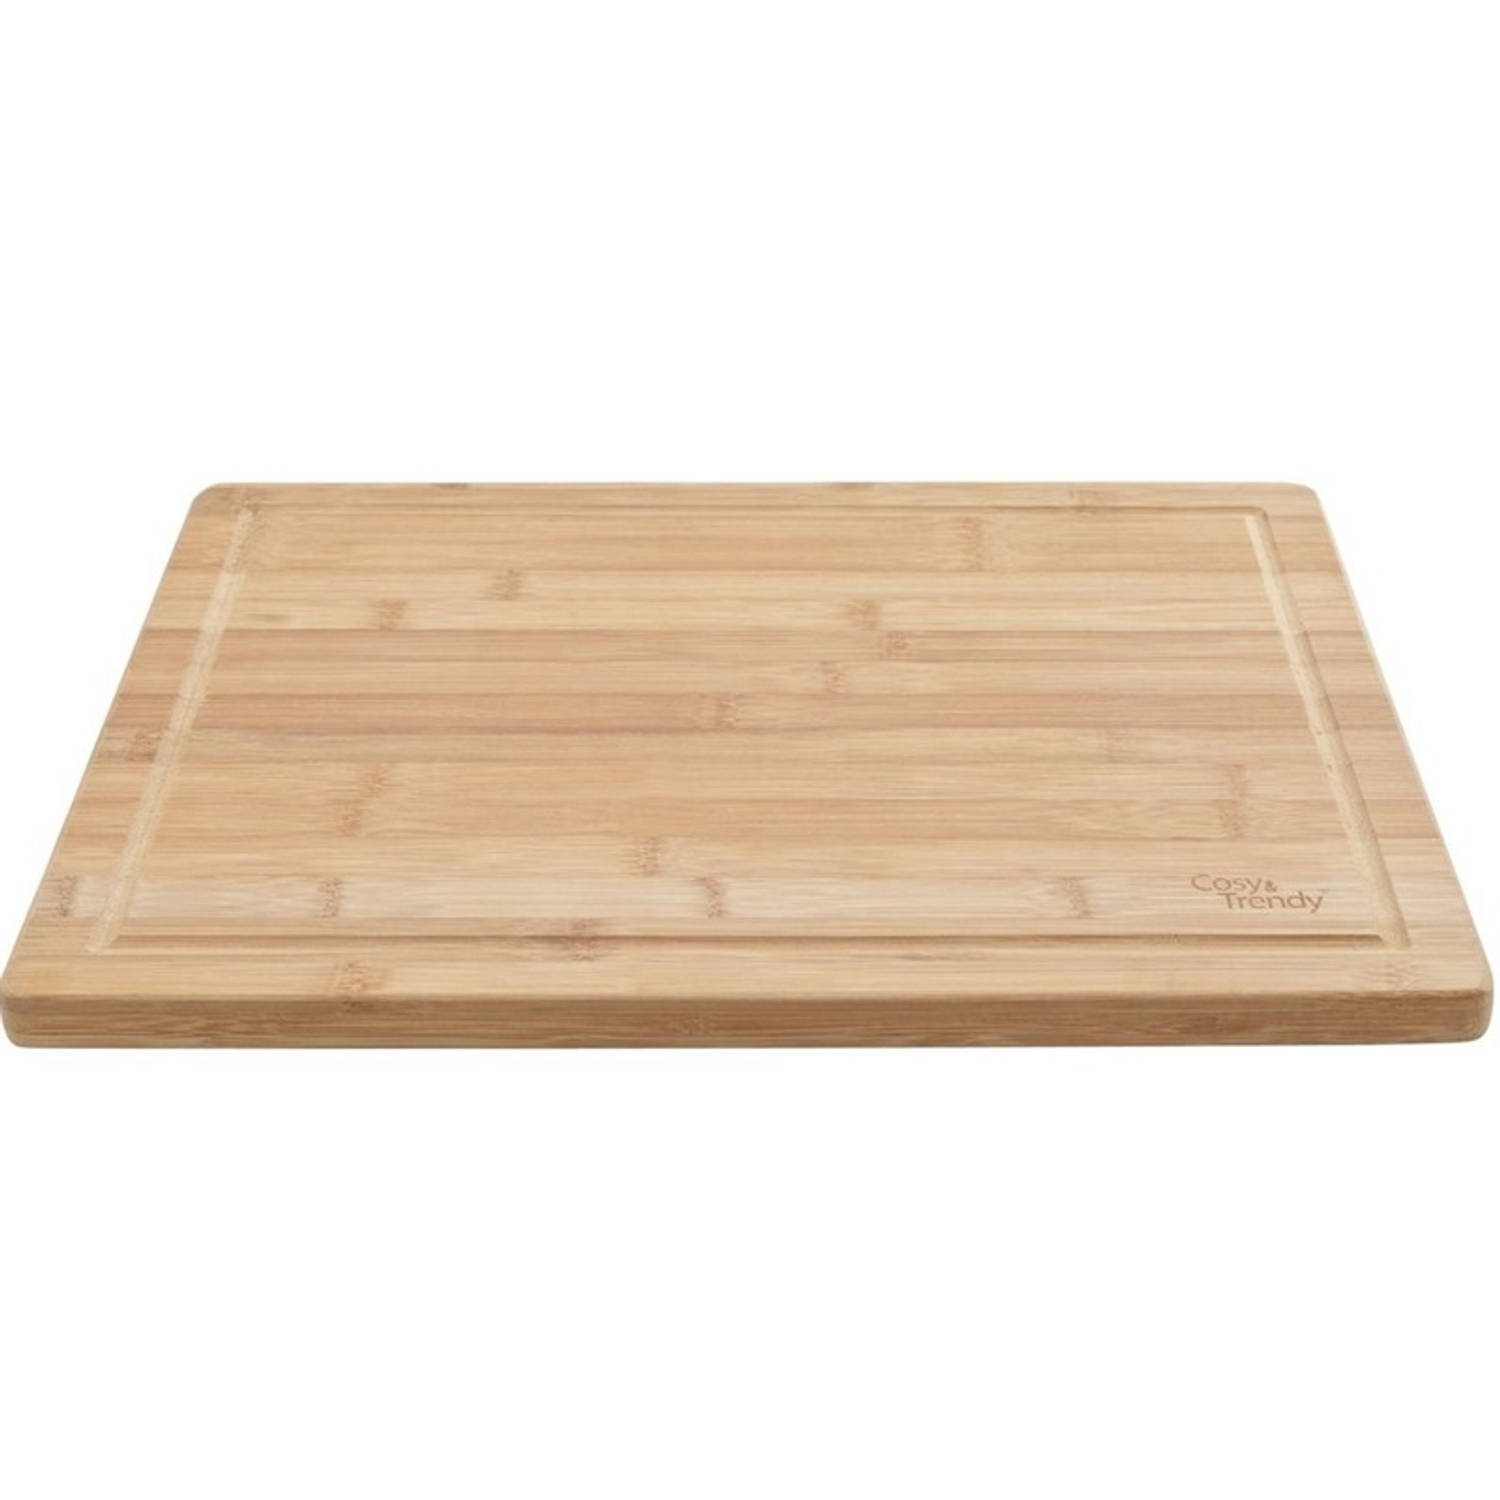 Cosy&Trendy Snijplank bamboe hout rechthoek 51 cm - Snijplanken voor groente, fruit, vlees en vis - Keuken/kookbenodigdheden